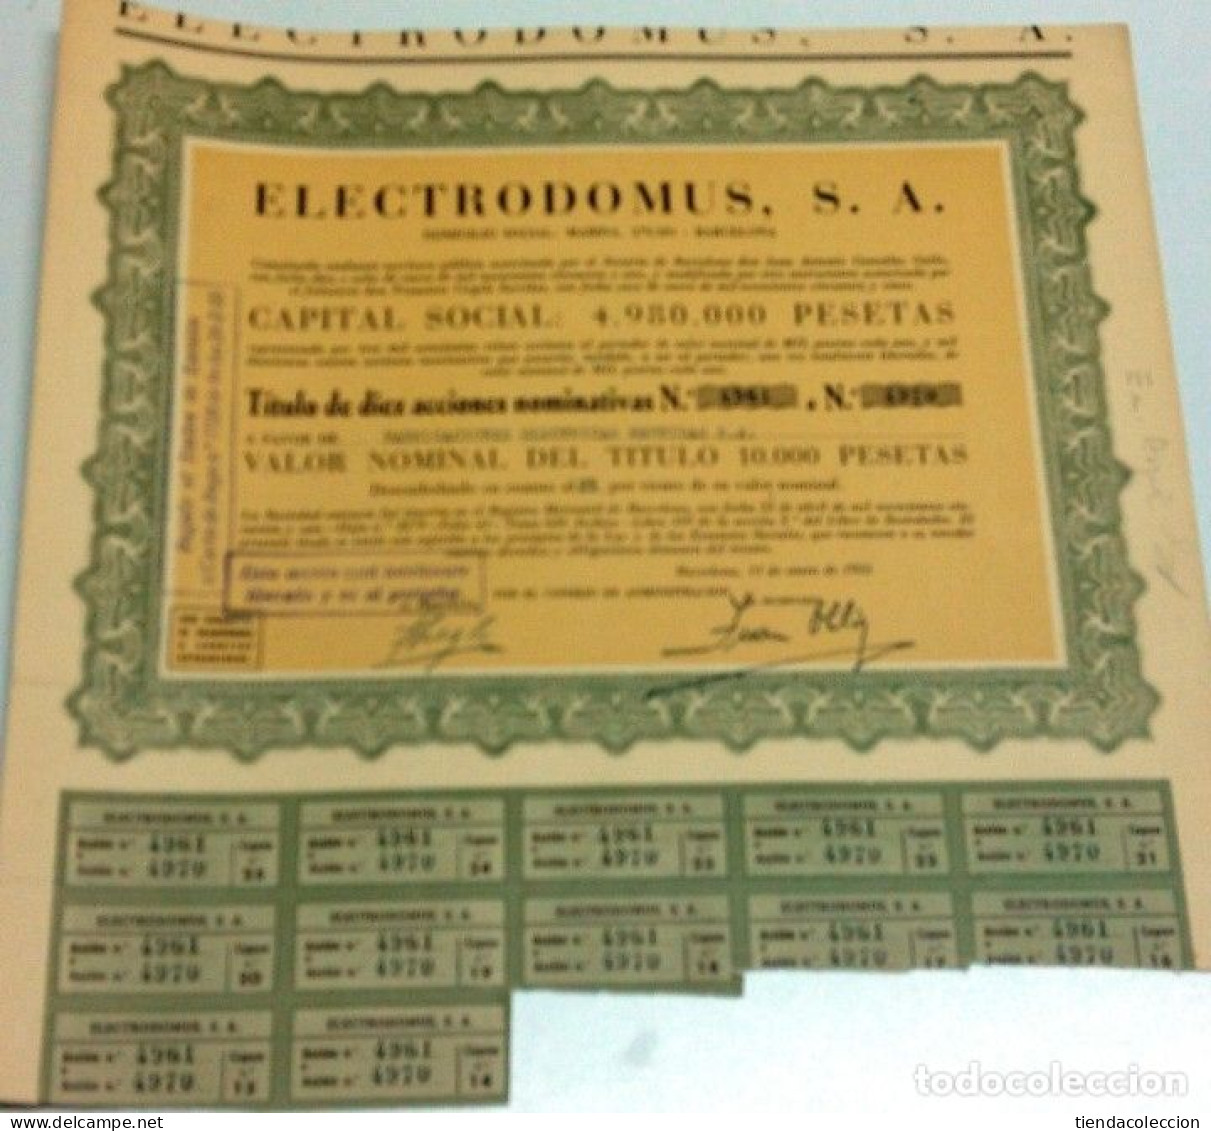 Electrodomus, S. A. - Electricité & Gaz